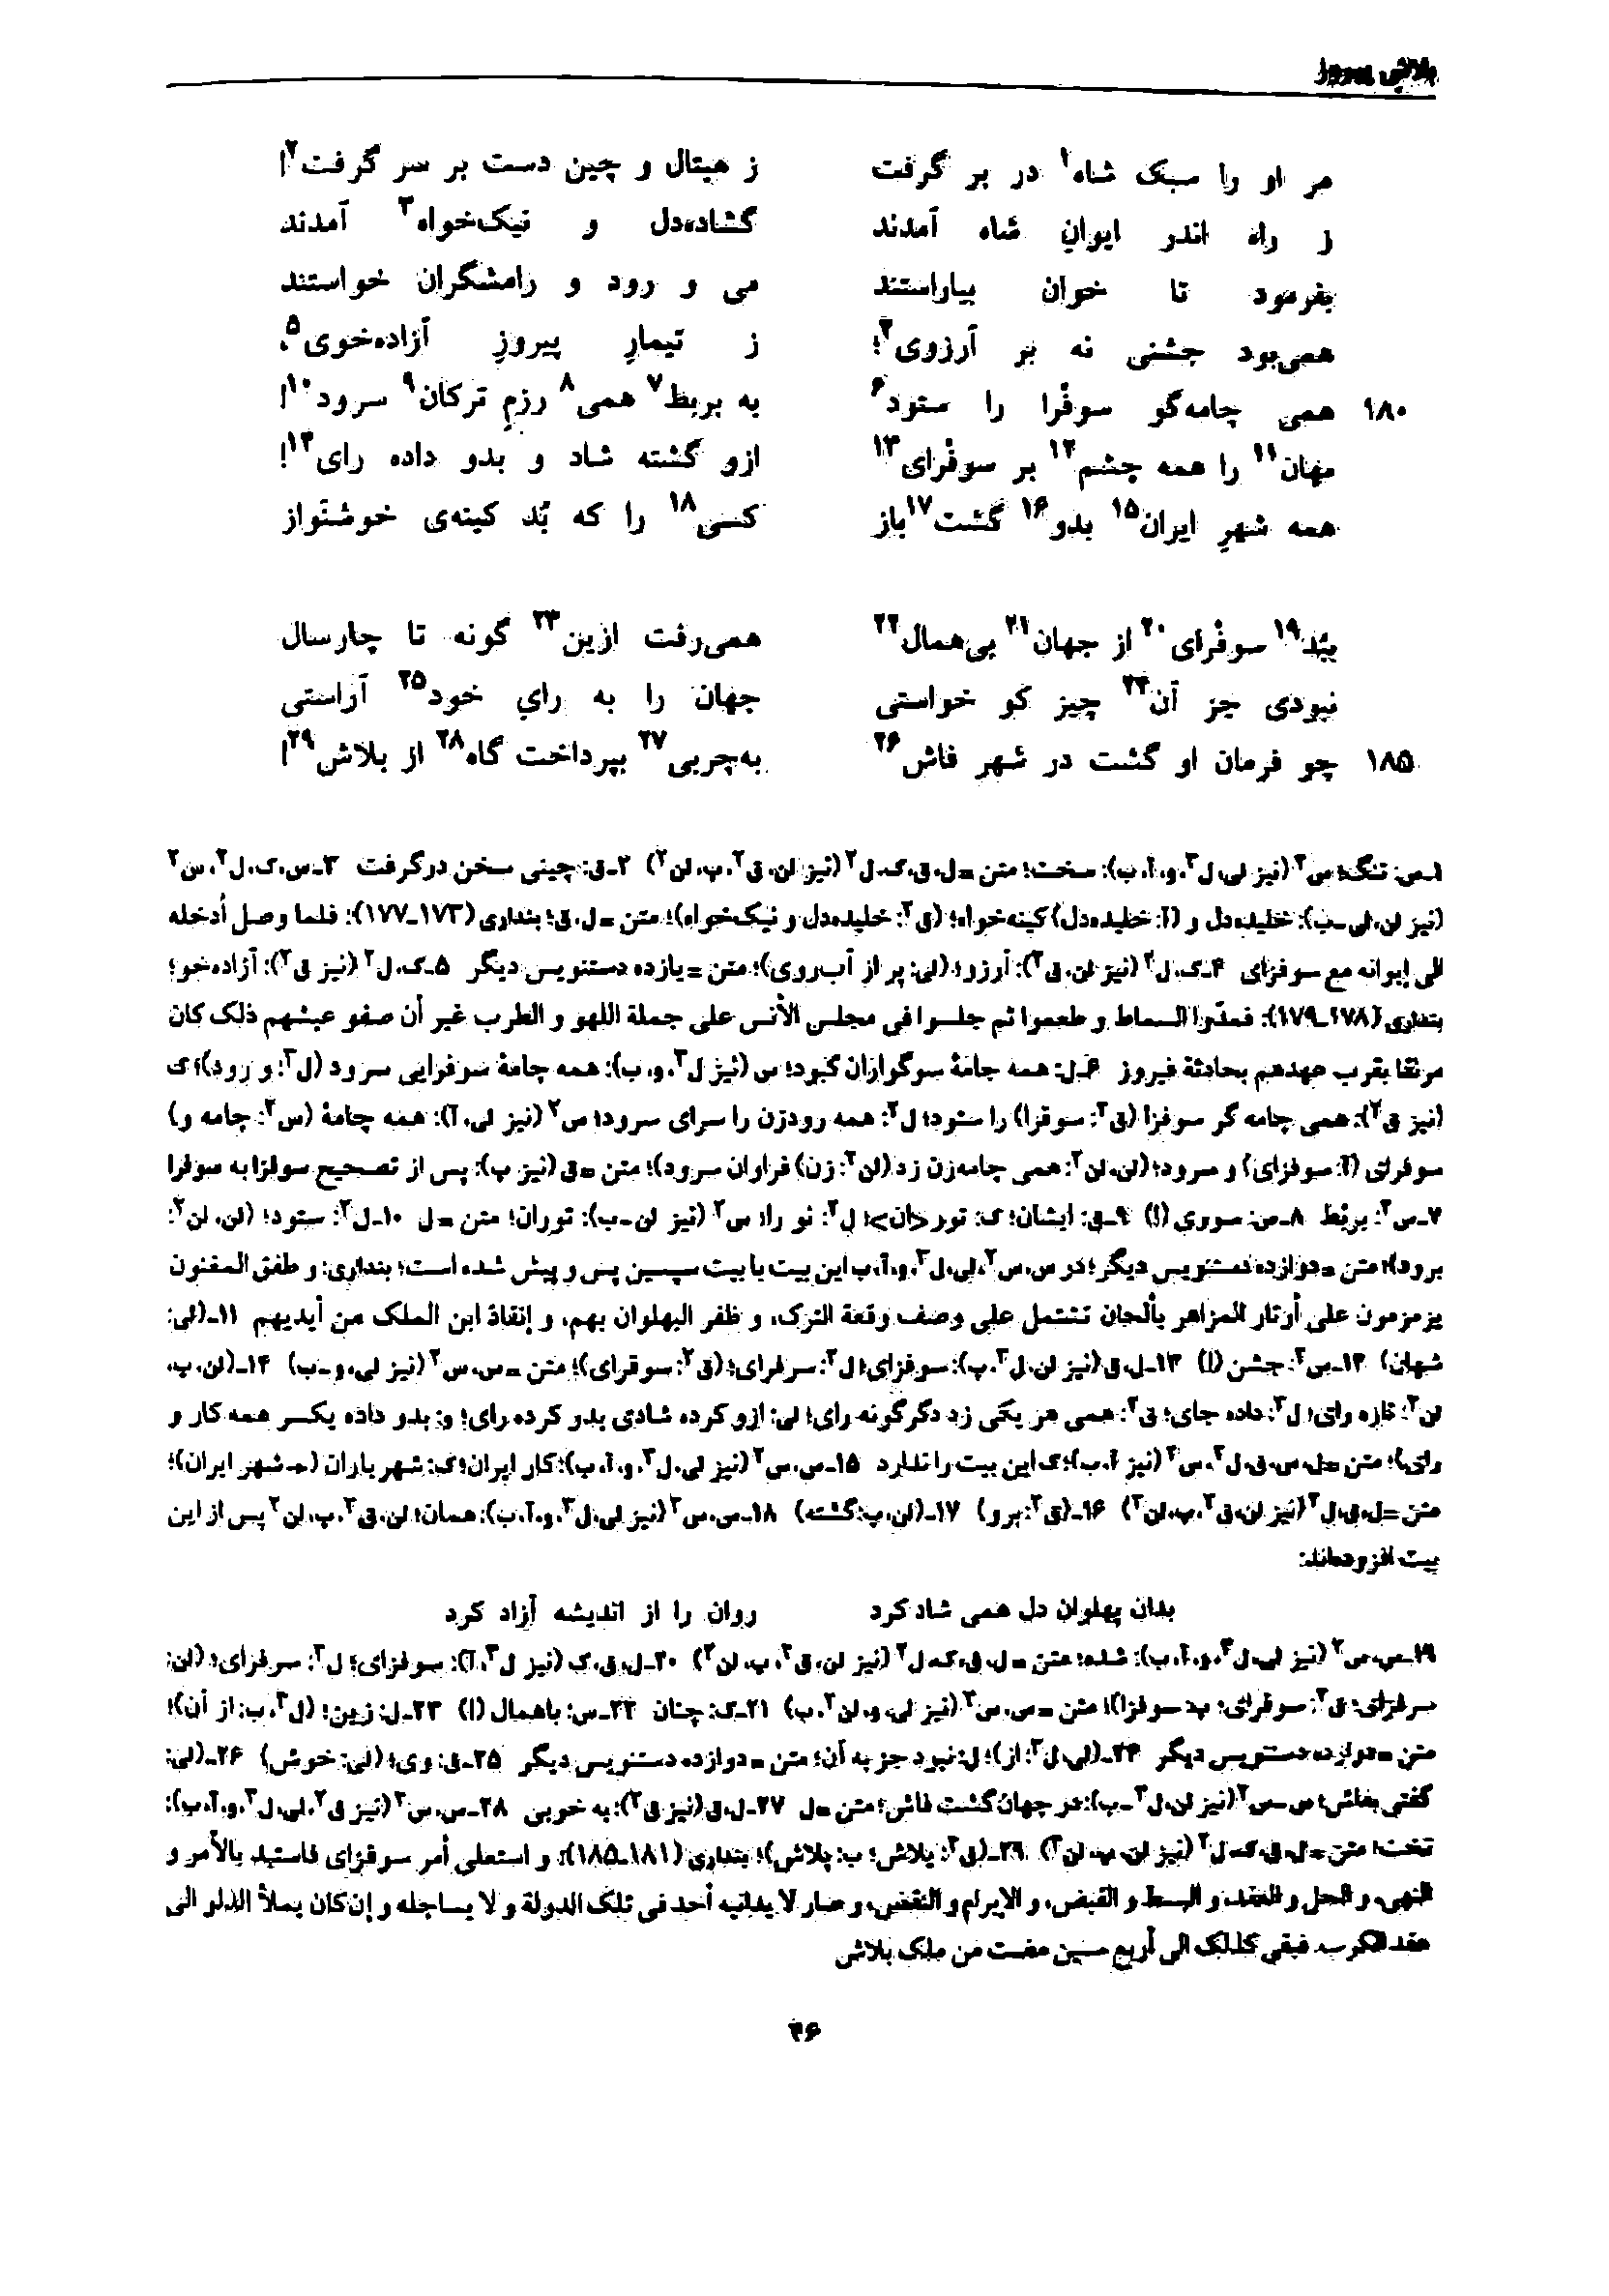 vol. 7, p. 46